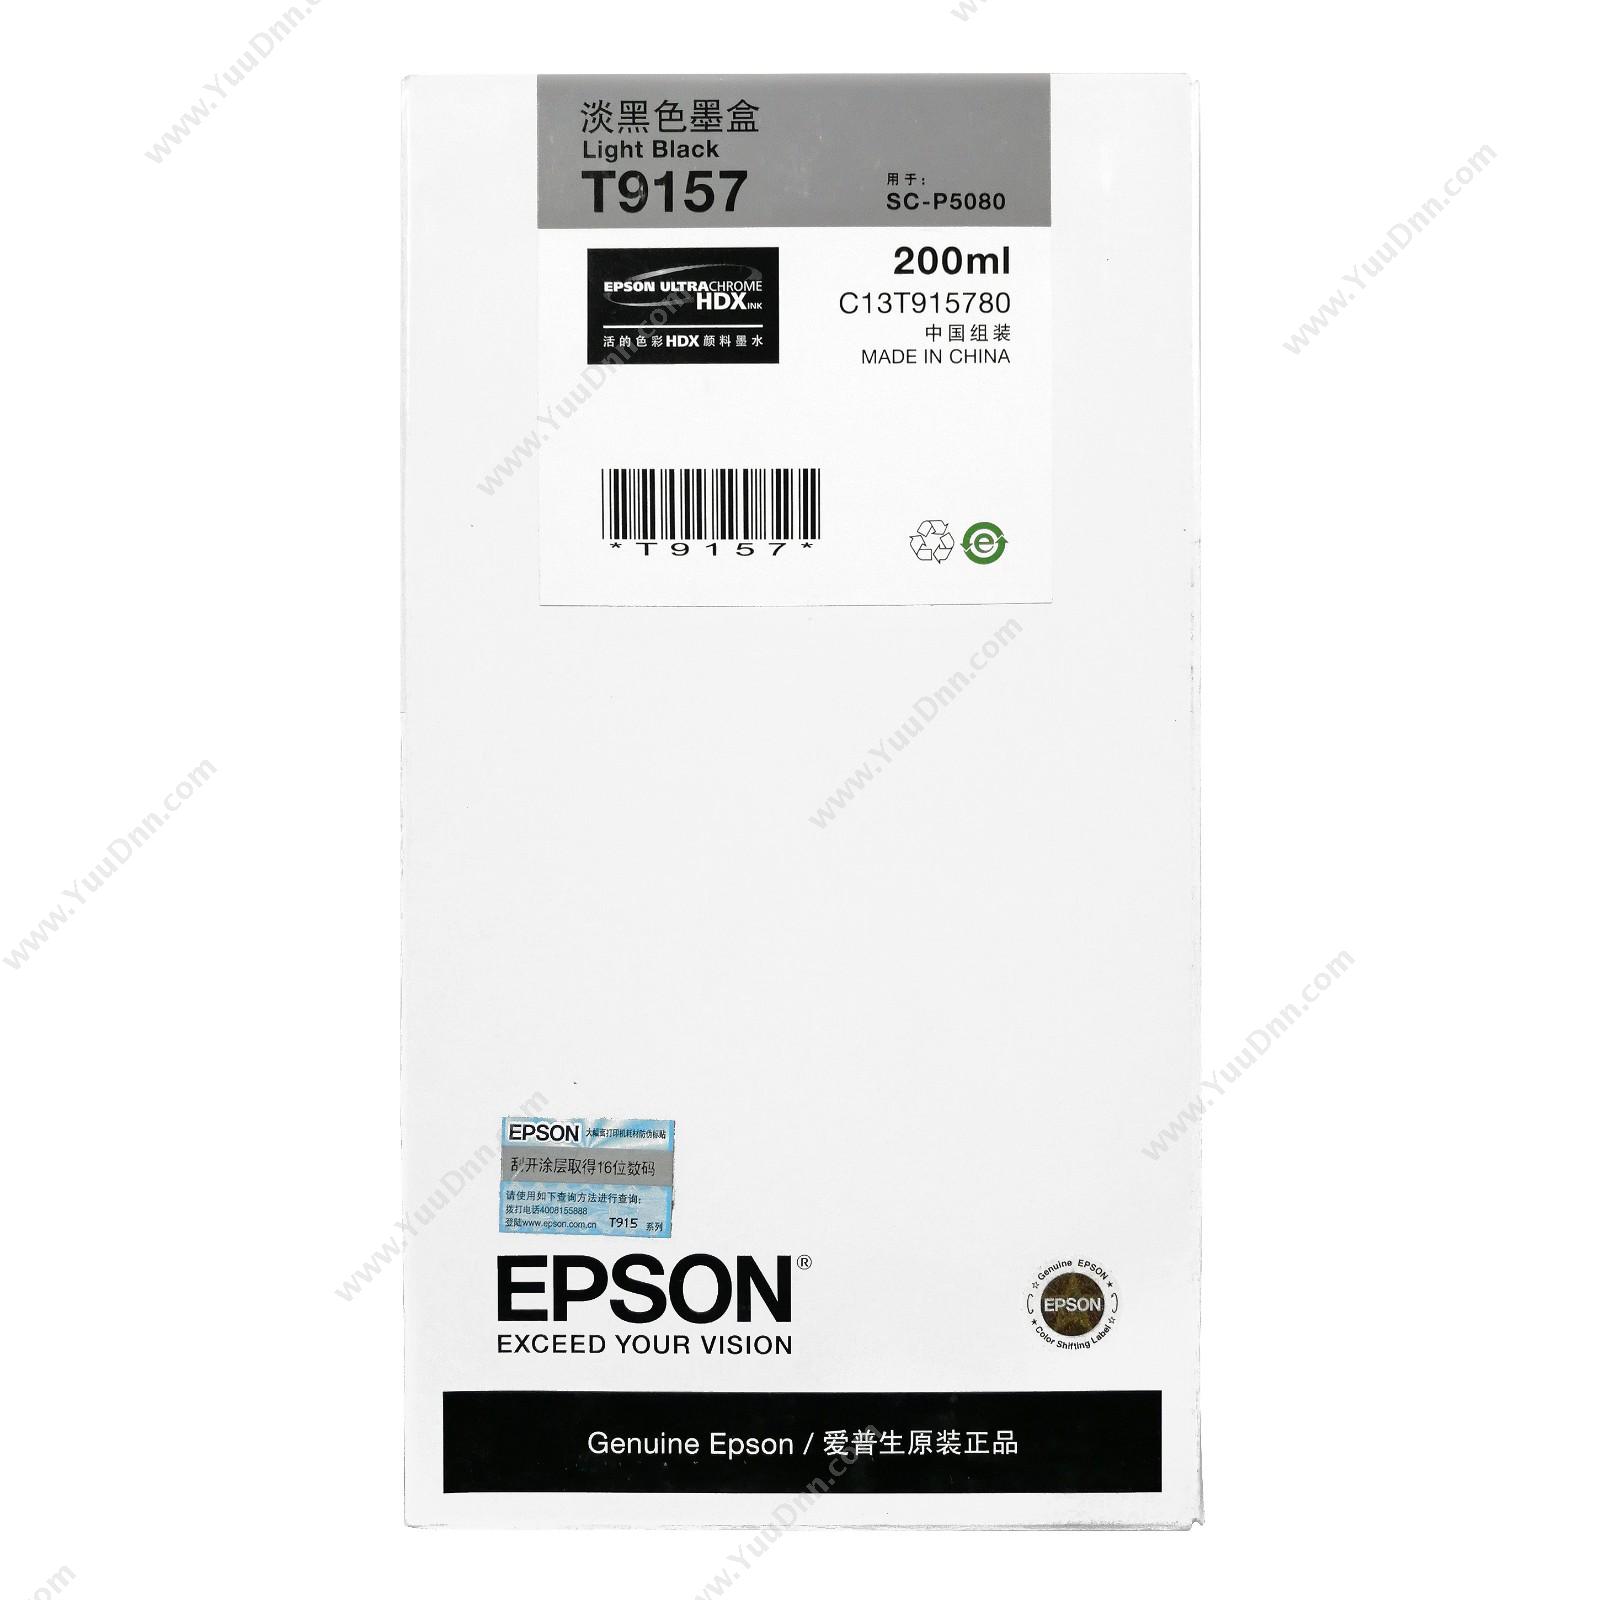 爱普生 EpsonP5080淡黑墨200ml(C13T915780)墨盒